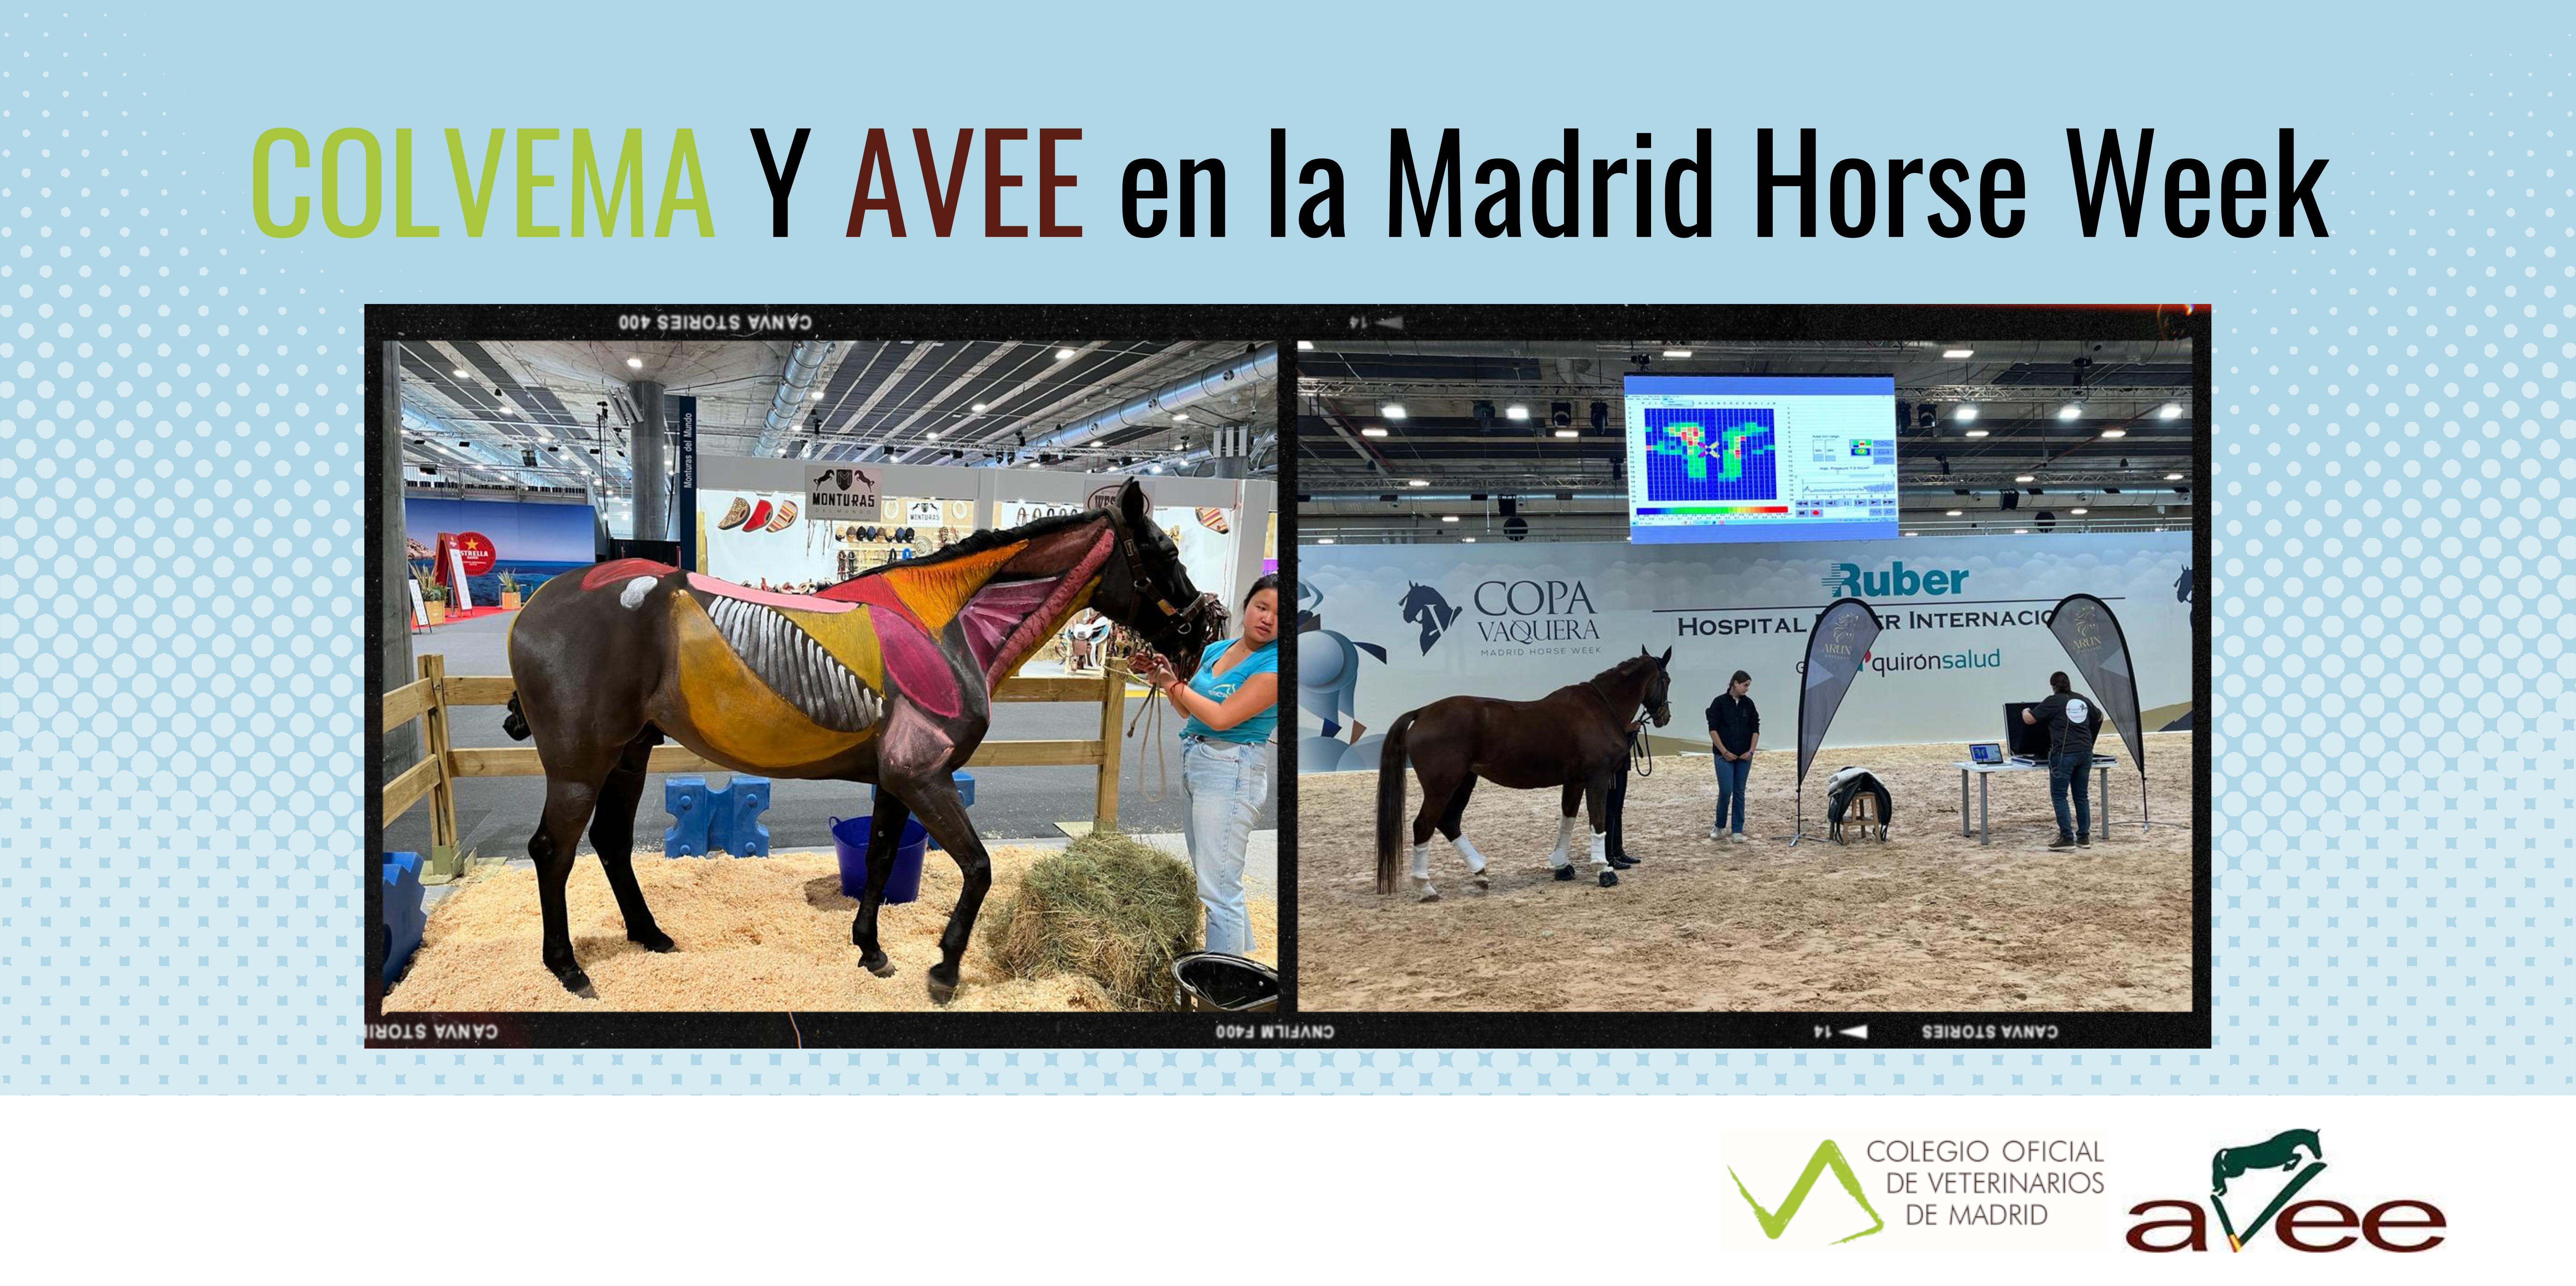 COLVEMA y AVEE en la Madrid Horse Week